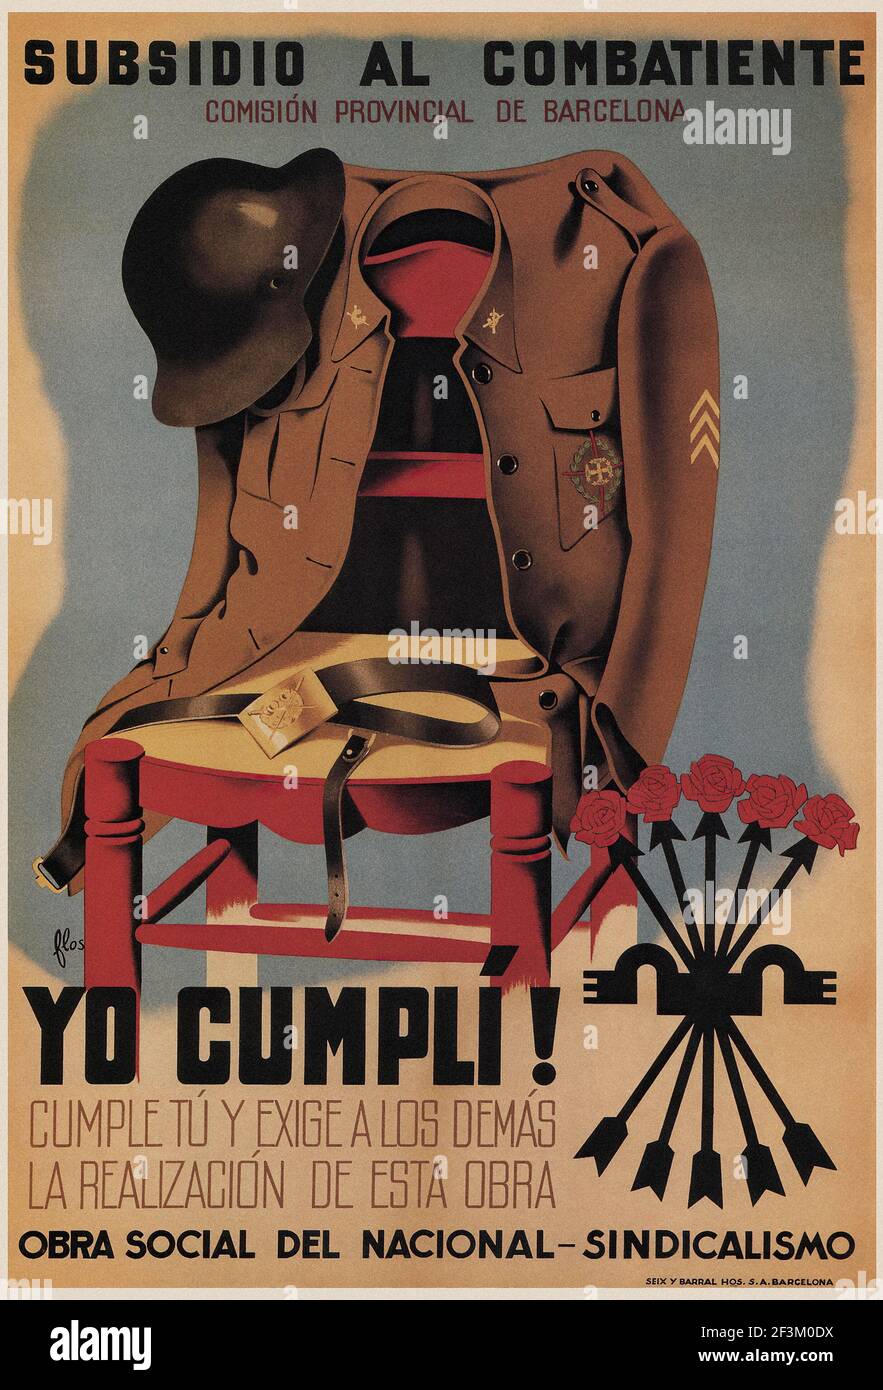 Manifesto della propaganda spagnola della Guerra civile. Sovvenzione combinata. Commissione Provinciale di Barcellona. 1939 Foto Stock